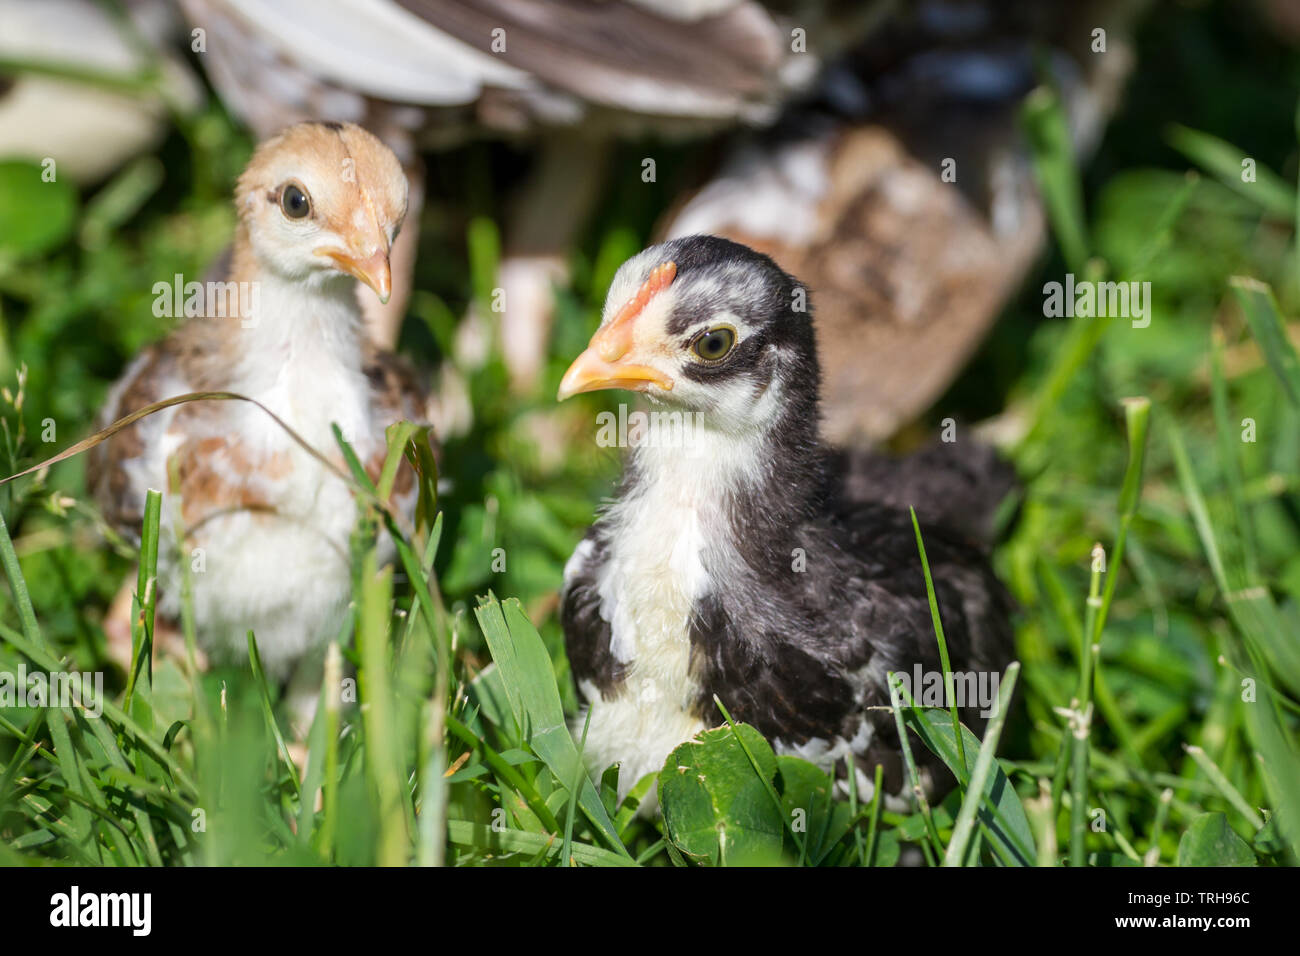 Zwei Jungvögel der Rasse Stoapiperl/Steinhendl, einer vom Aussterben bedrohten Rasse Huhn aus Österreich, auf der Wiese Stockfoto